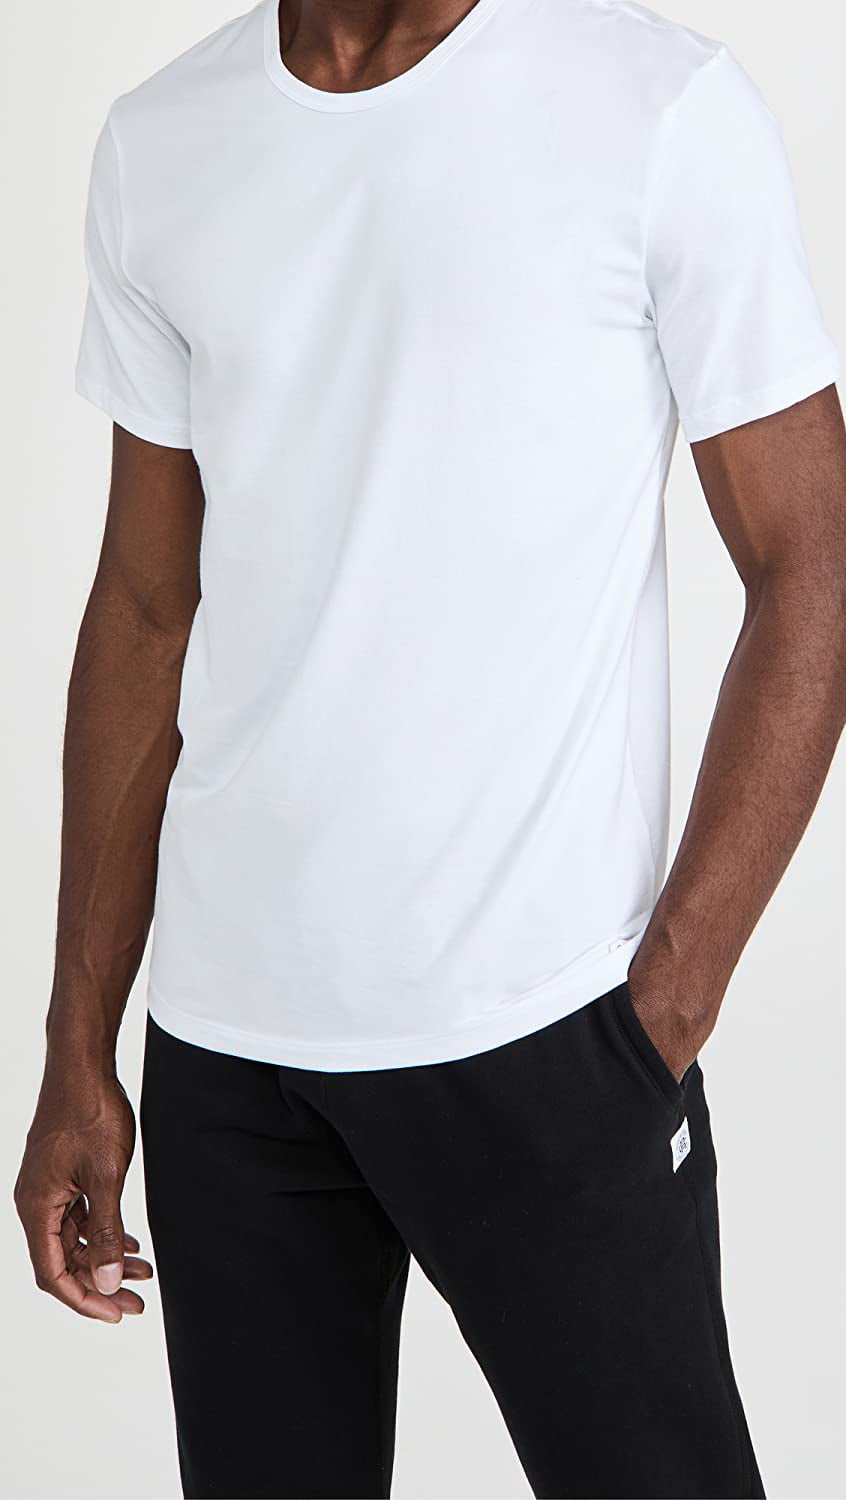 Calvin Klein Underwear Mens Short Sleeve Crew Neck 2Pk Medium White